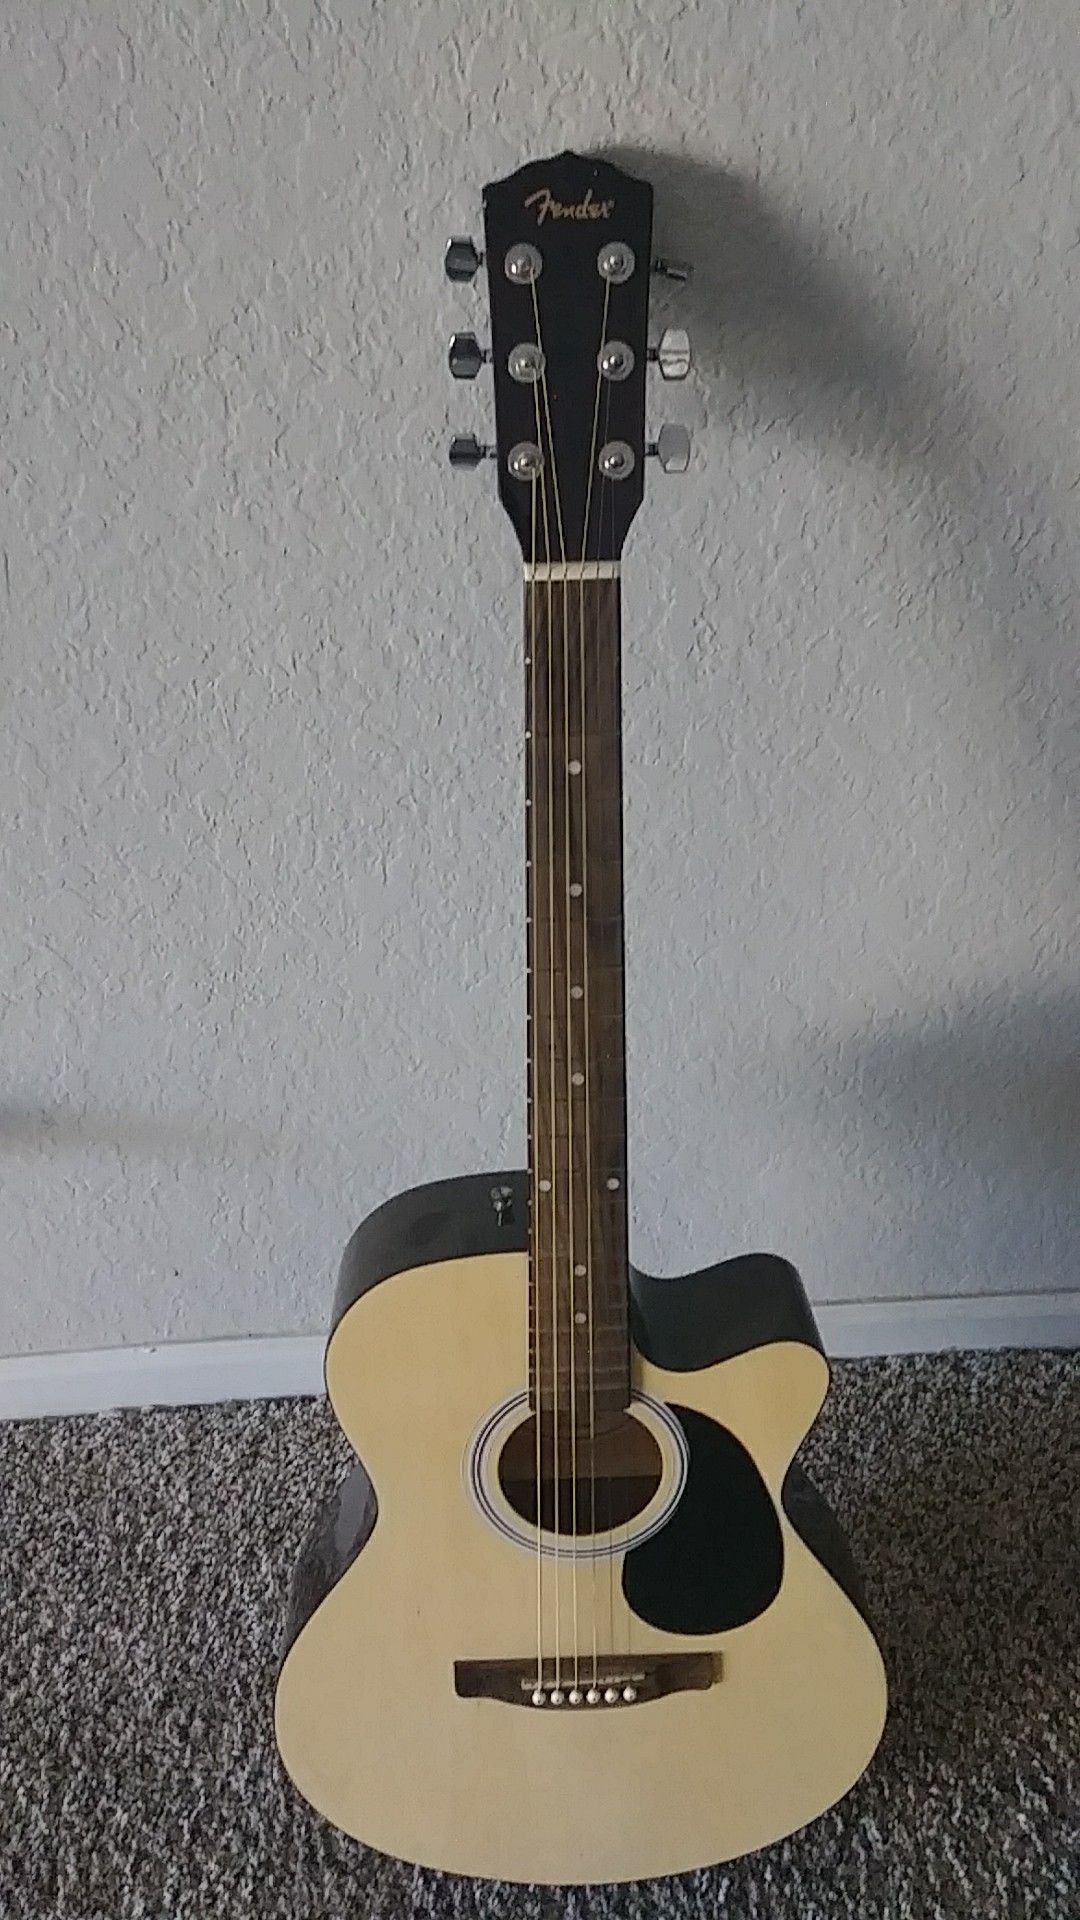 Fishma Fendex Guitar